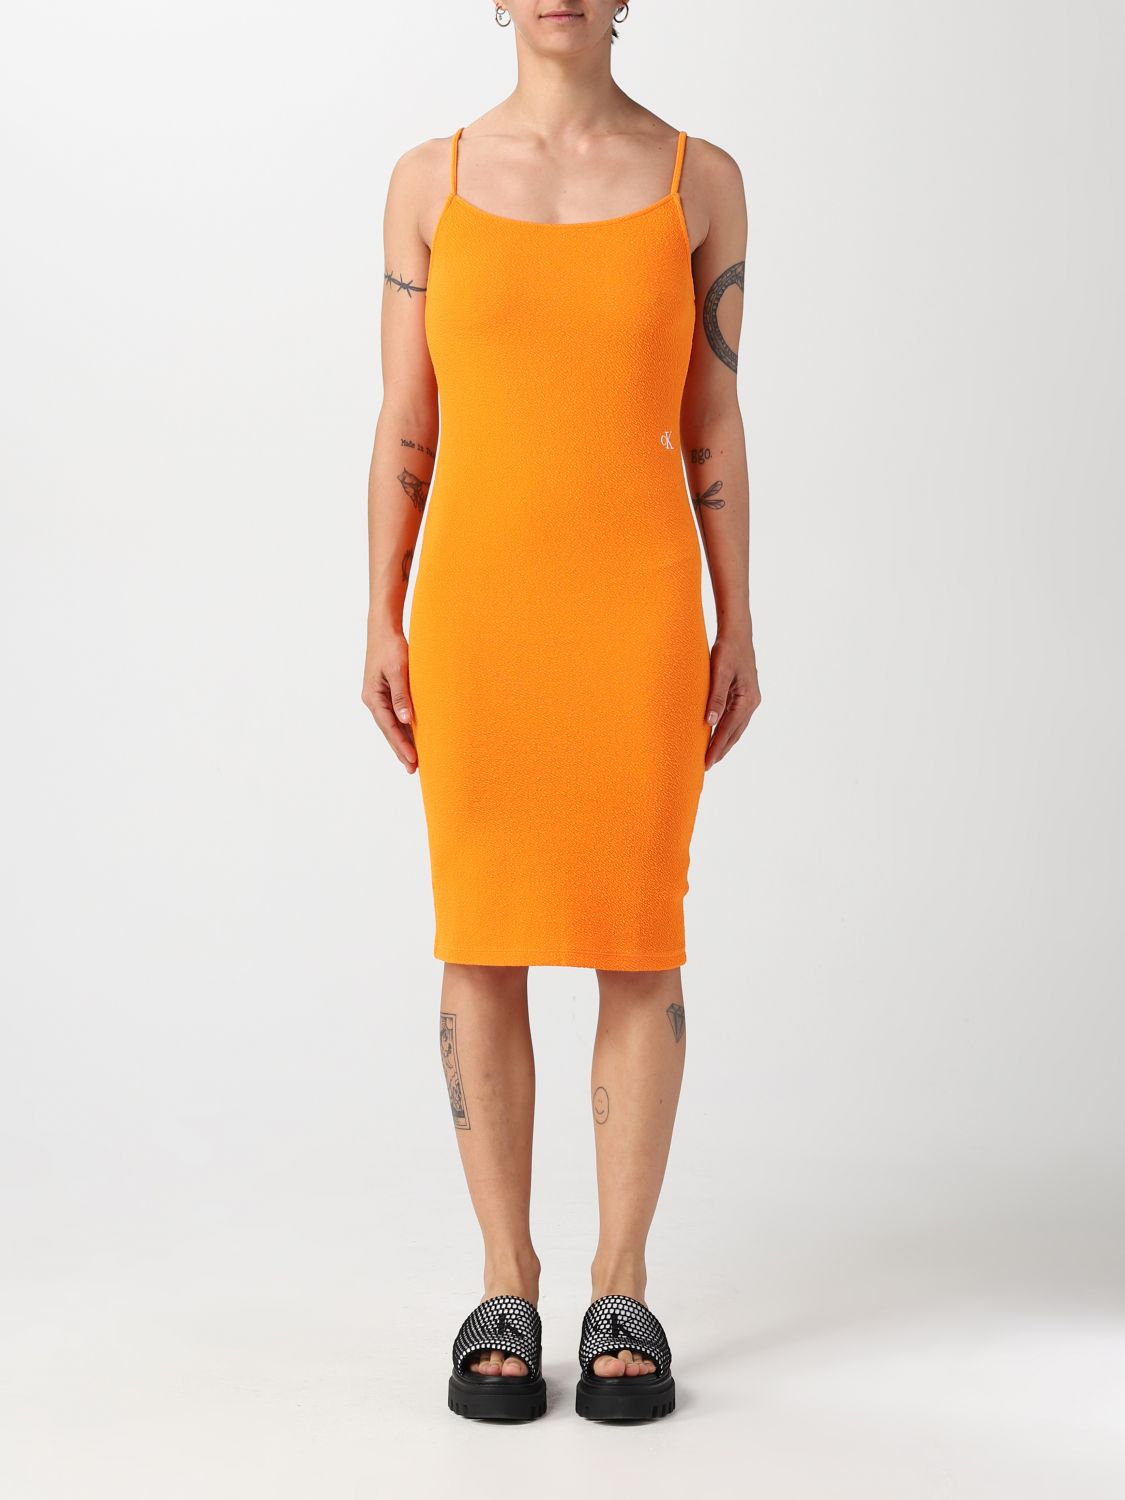 filosofie Marine Odysseus CALVIN KLEIN JEANS: dress for woman - Orange | Calvin Klein Jeans dress  J20J221149 online on GIGLIO.COM